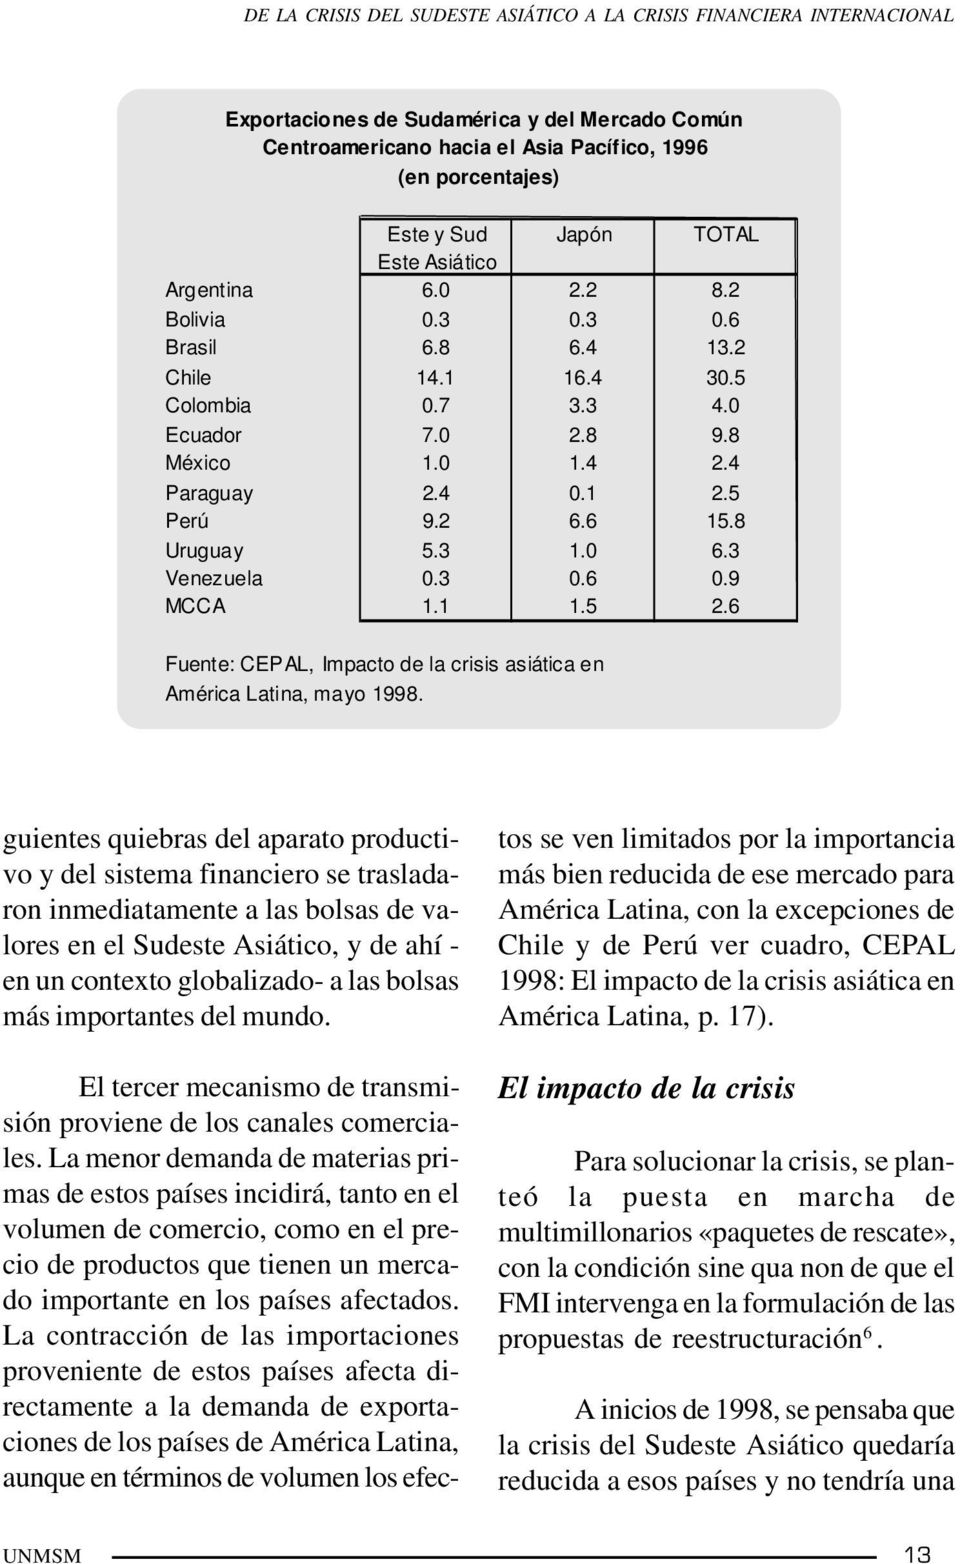 8 Uruguay 5.3 1.0 6.3 Venezuela 0.3 0.6 0.9 MCCA 1.1 1.5 2.6 Fuente: CEPAL, Impacto de la crisis asiática en América Latina, mayo 1998.